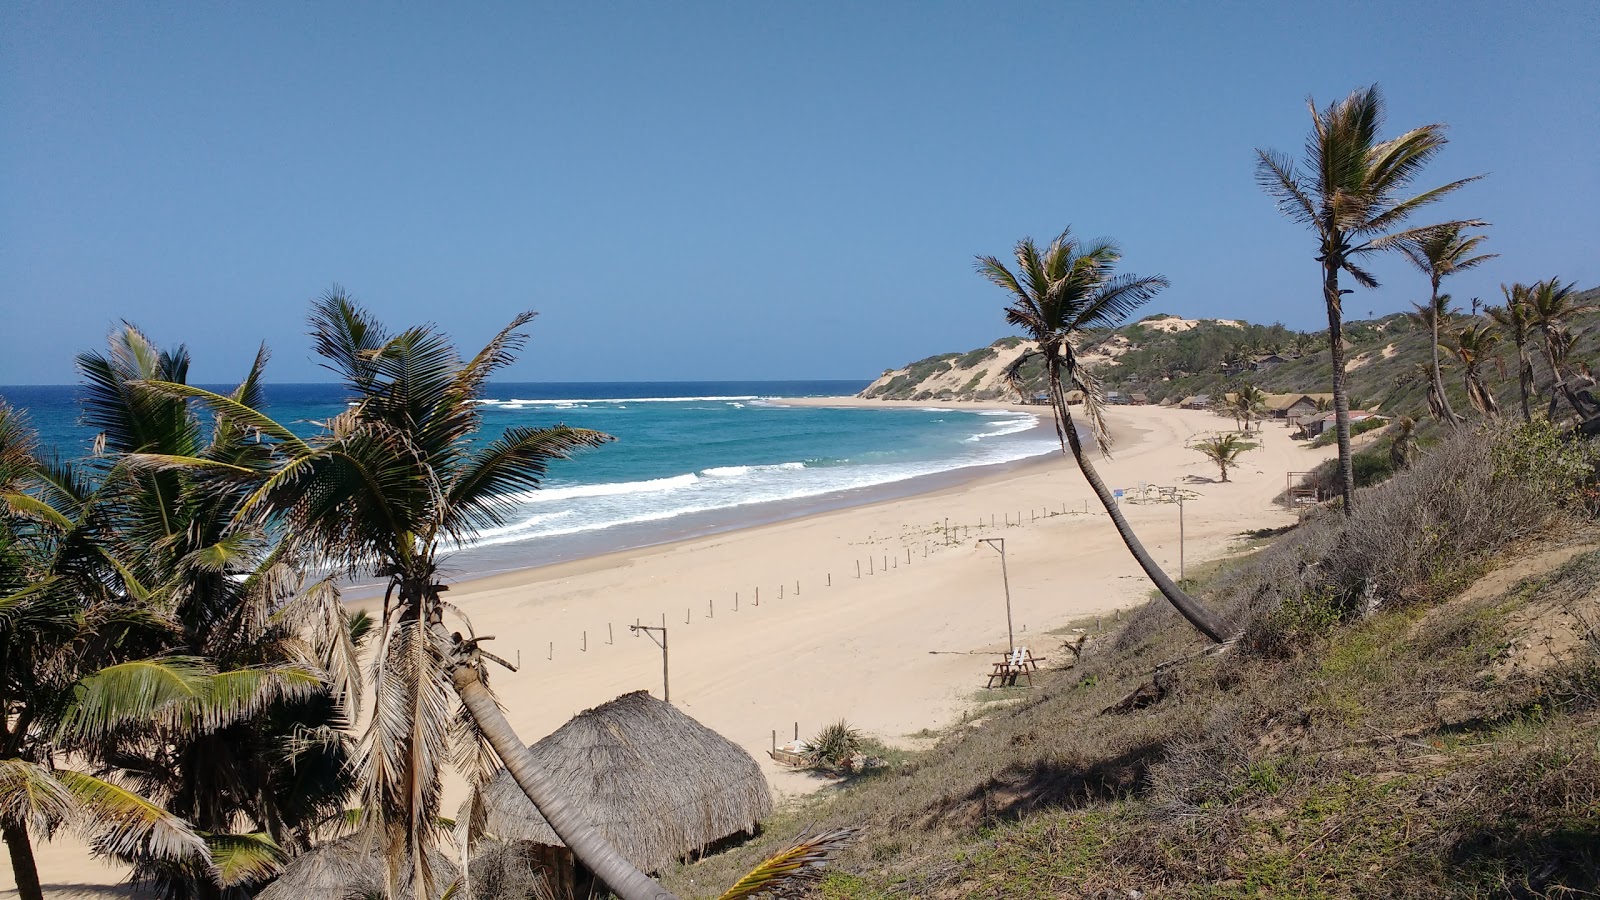 Valokuva Praia de Jangamoista. pinnalla kirkas hieno hiekka:n kanssa